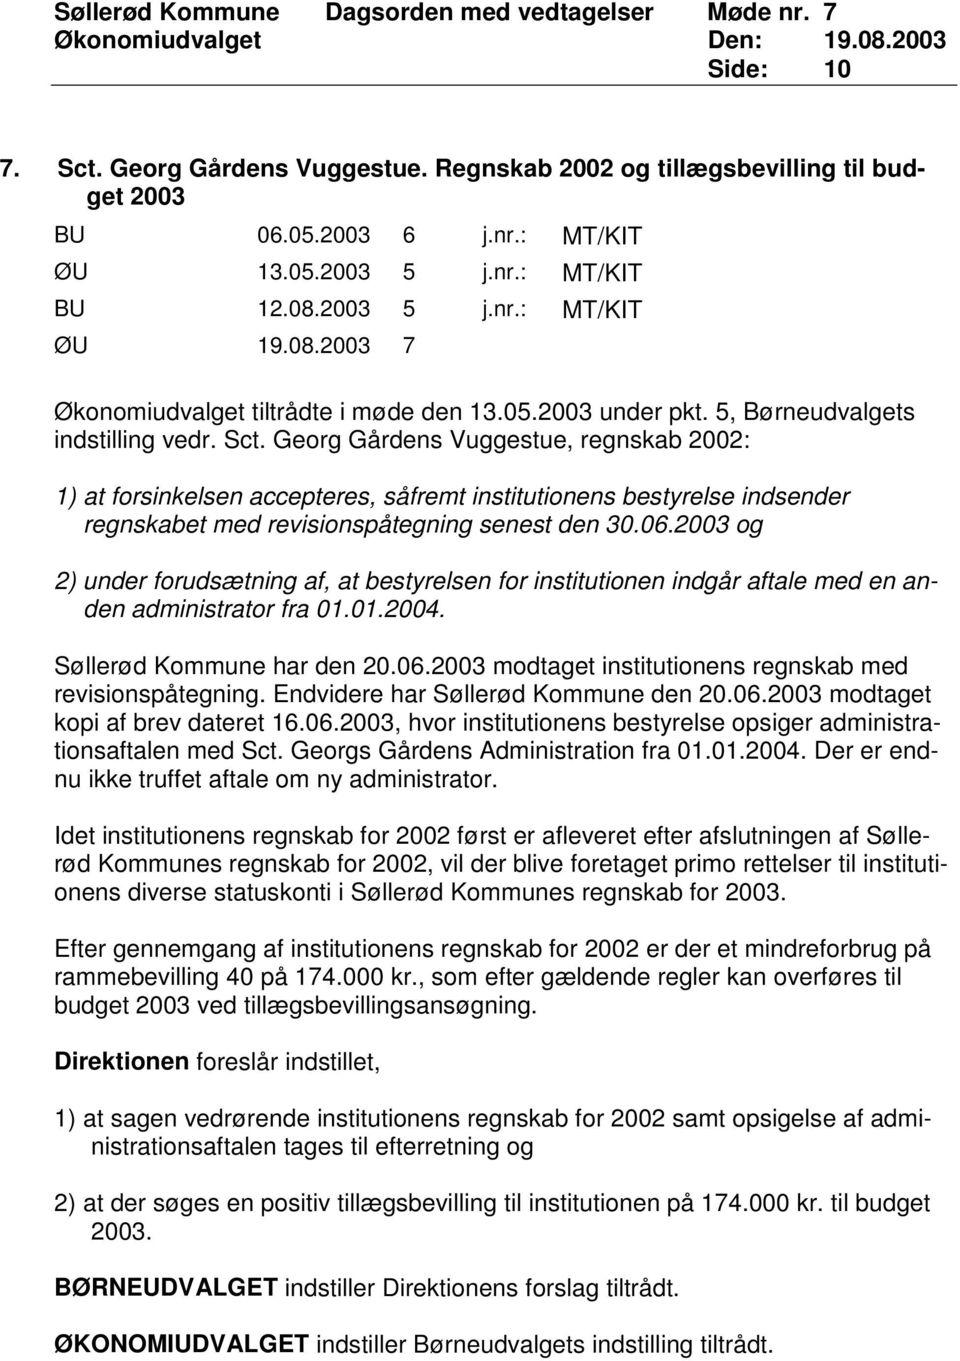 Georg Gårdens Vuggestue, regnskab 2002: 1) at forsinkelsen accepteres, såfremt institutionens bestyrelse indsender regnskabet med revisionspåtegning senest den 30.06.